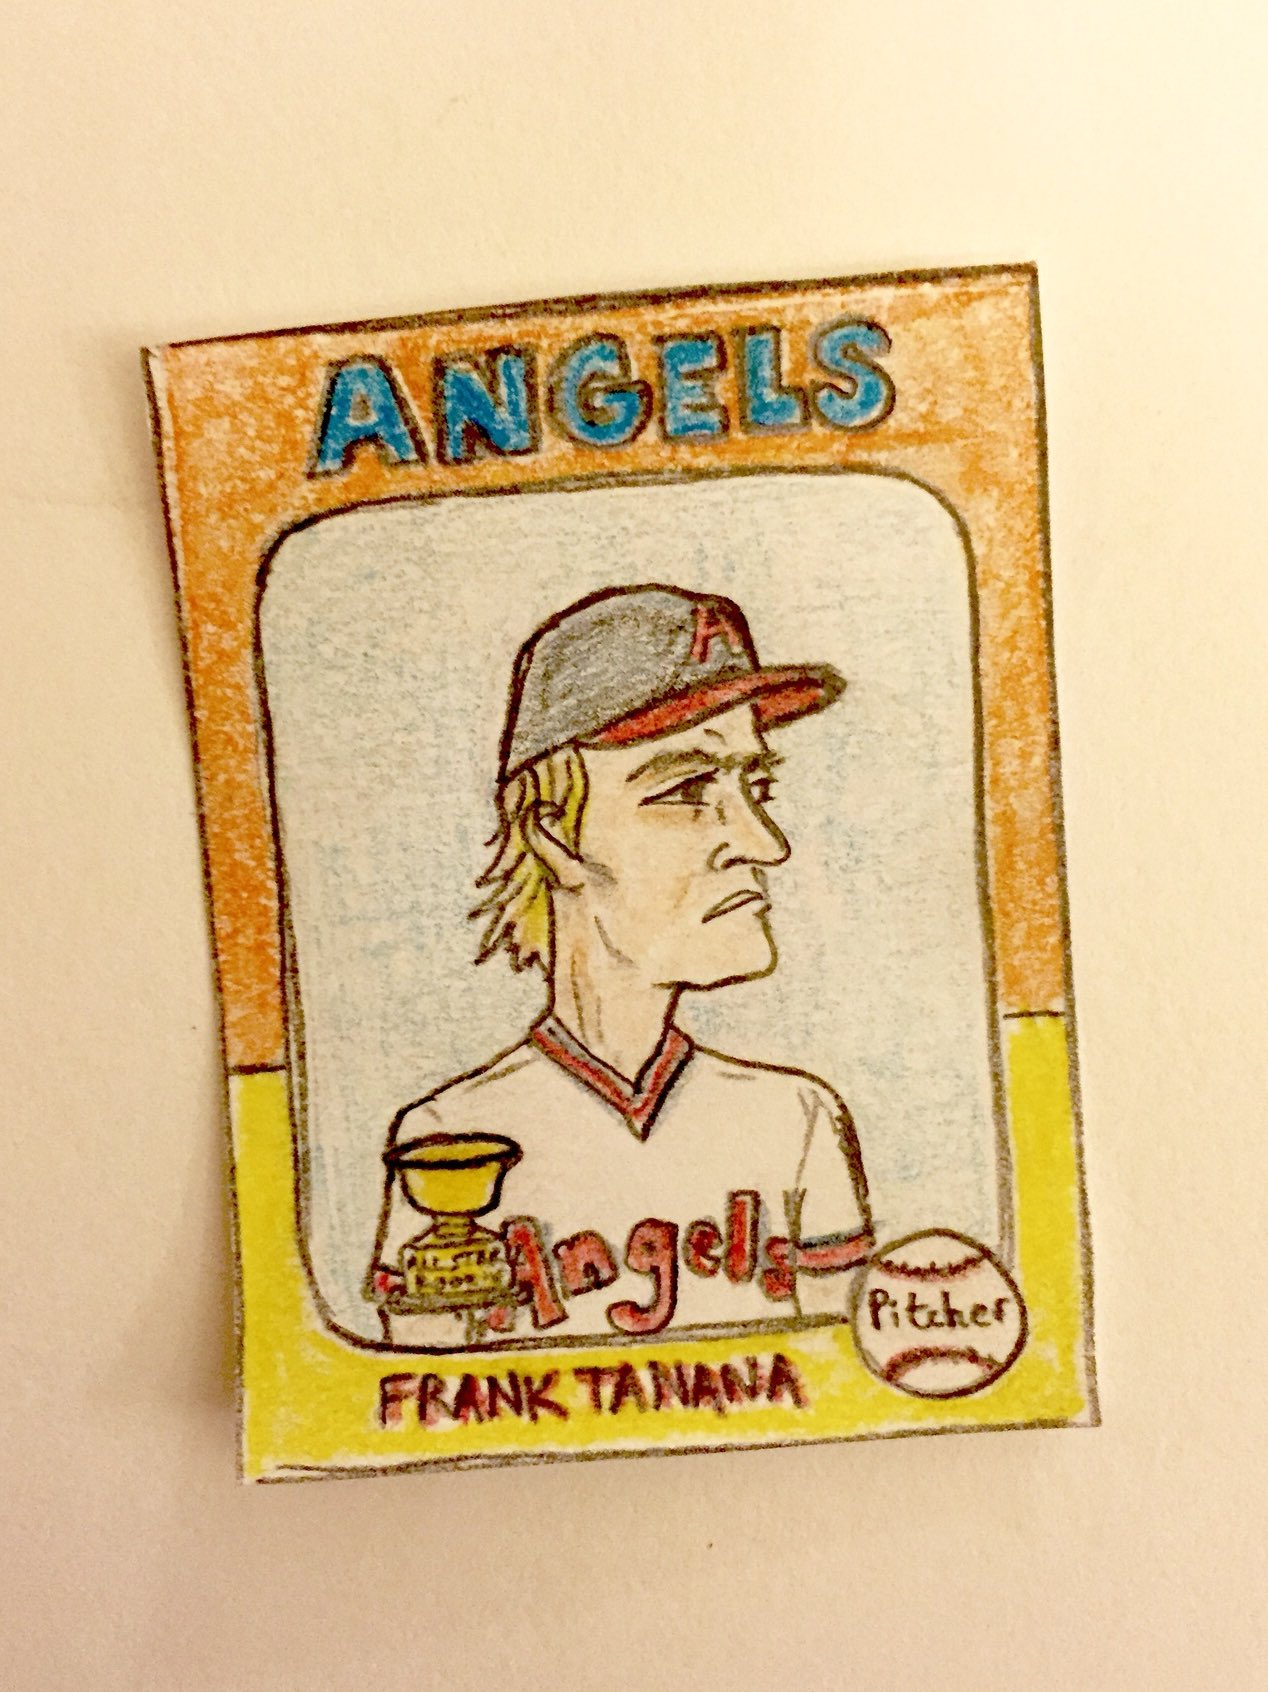 Wishing a happy baseball birthday to Frank Tanana and Moises Alou!  